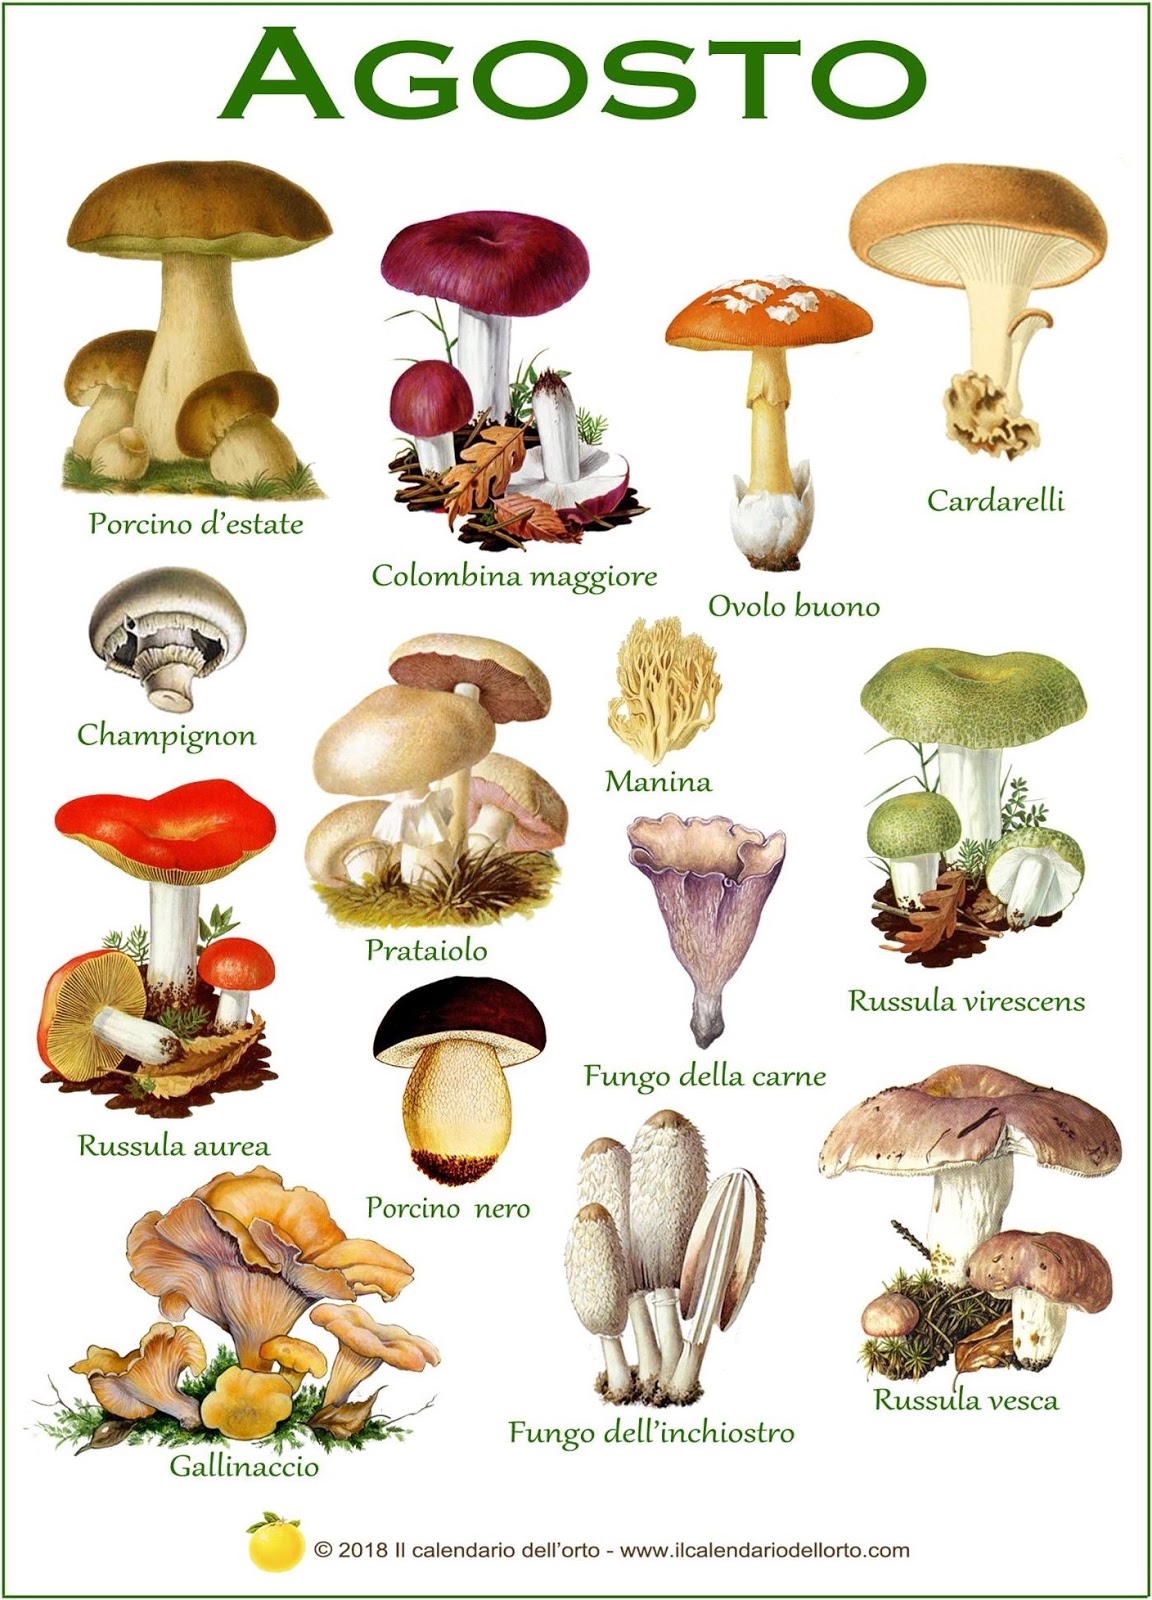 funghi che si trovano in agosto